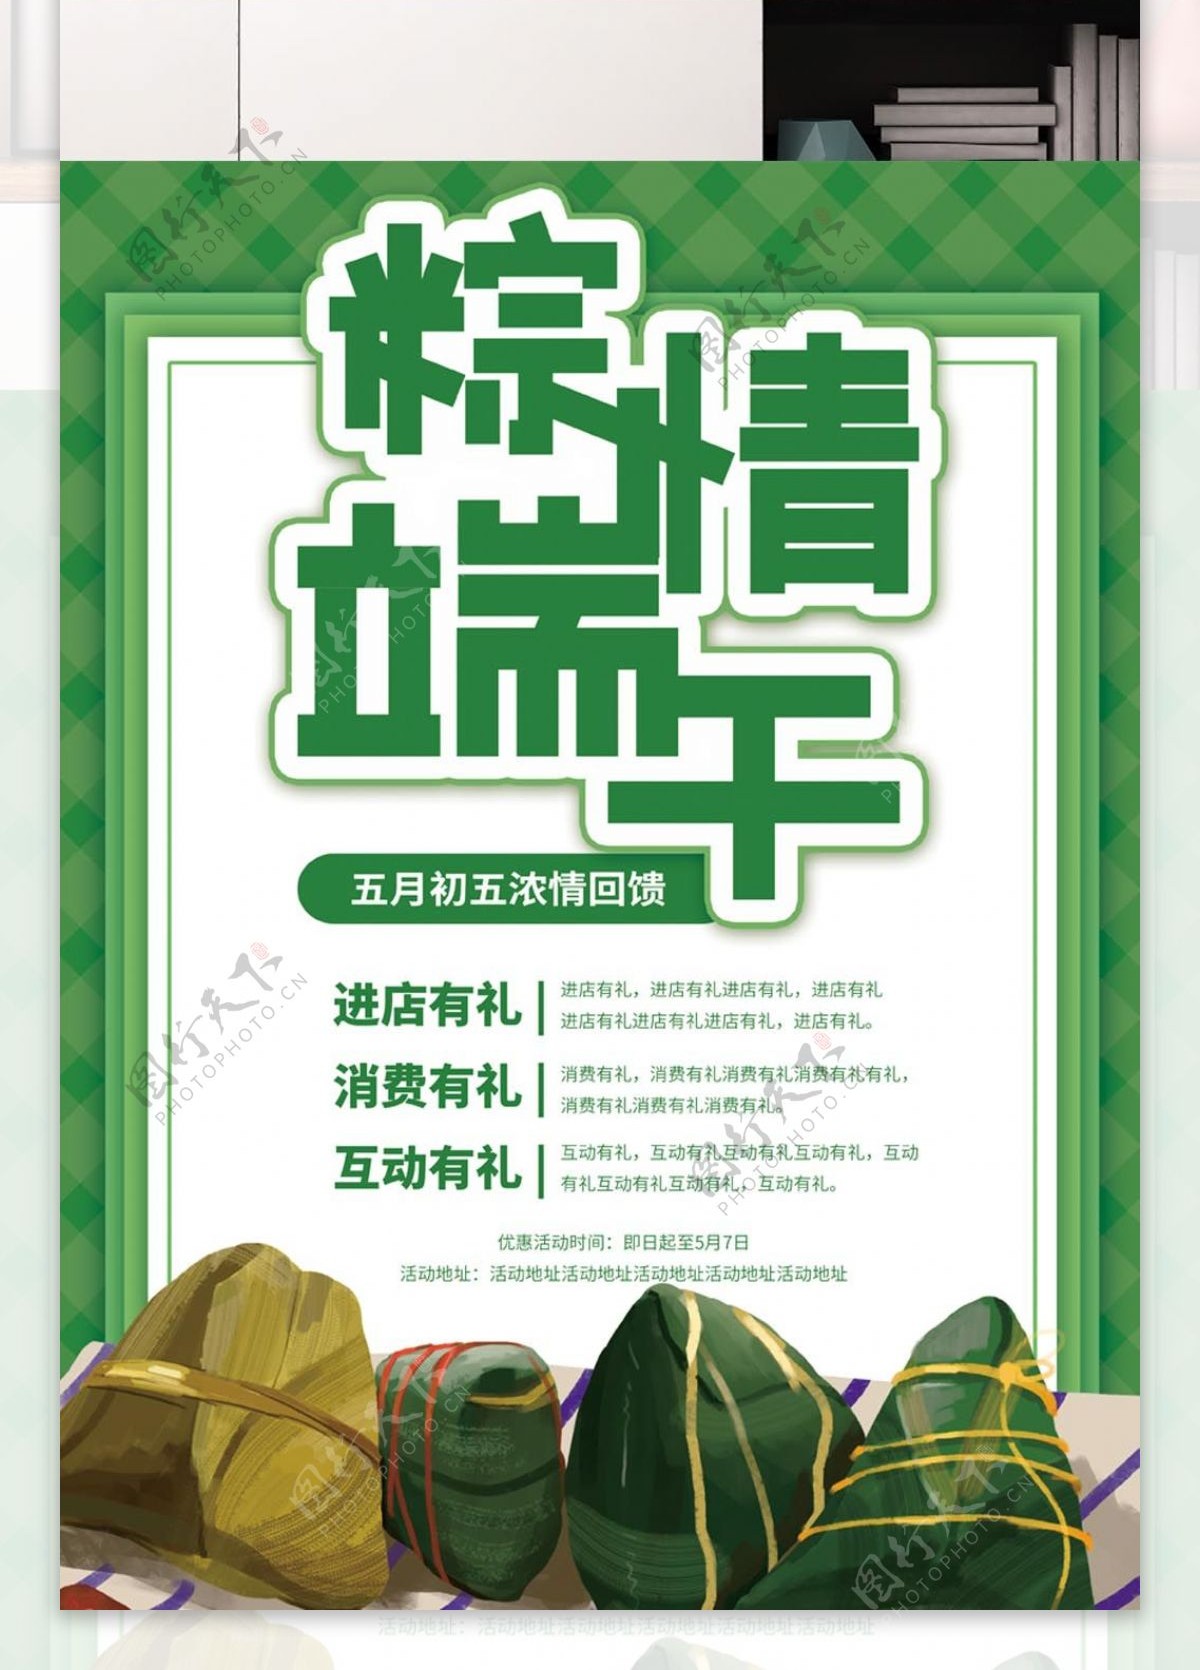 绿色清新端午节优惠海报